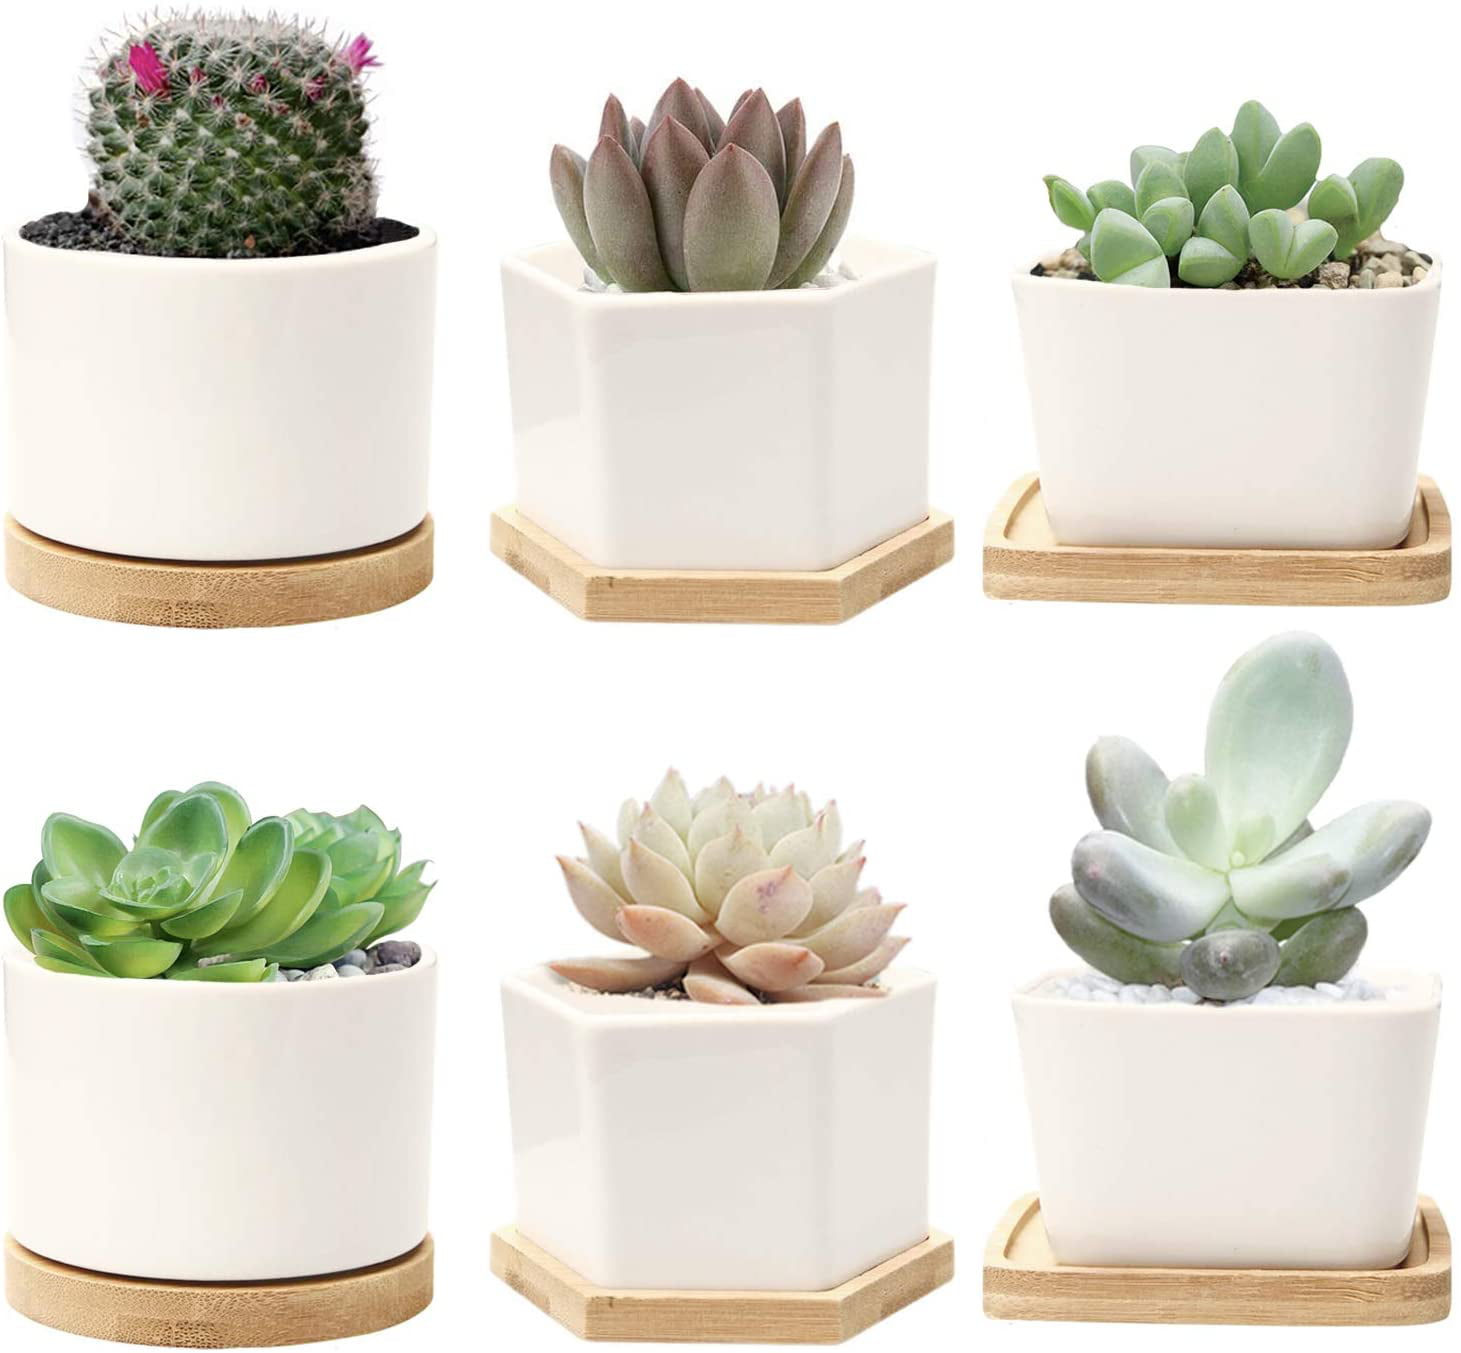 Mini Ceramic Pot Succulent Plant Container Flower Planter Garden Home Decor 2pcs